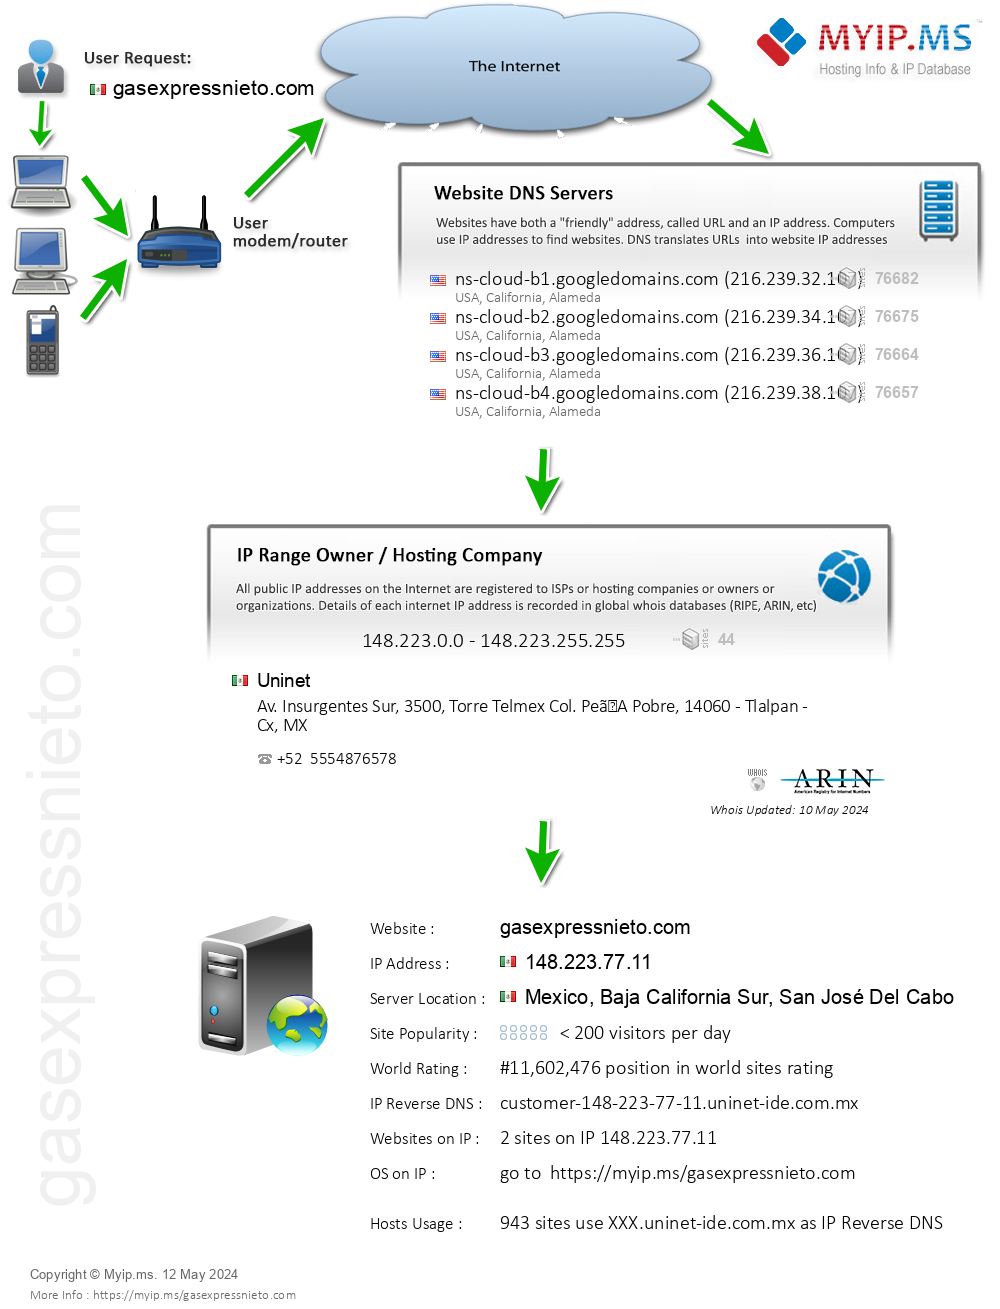 Gasexpressnieto.com - Website Hosting Visual IP Diagram